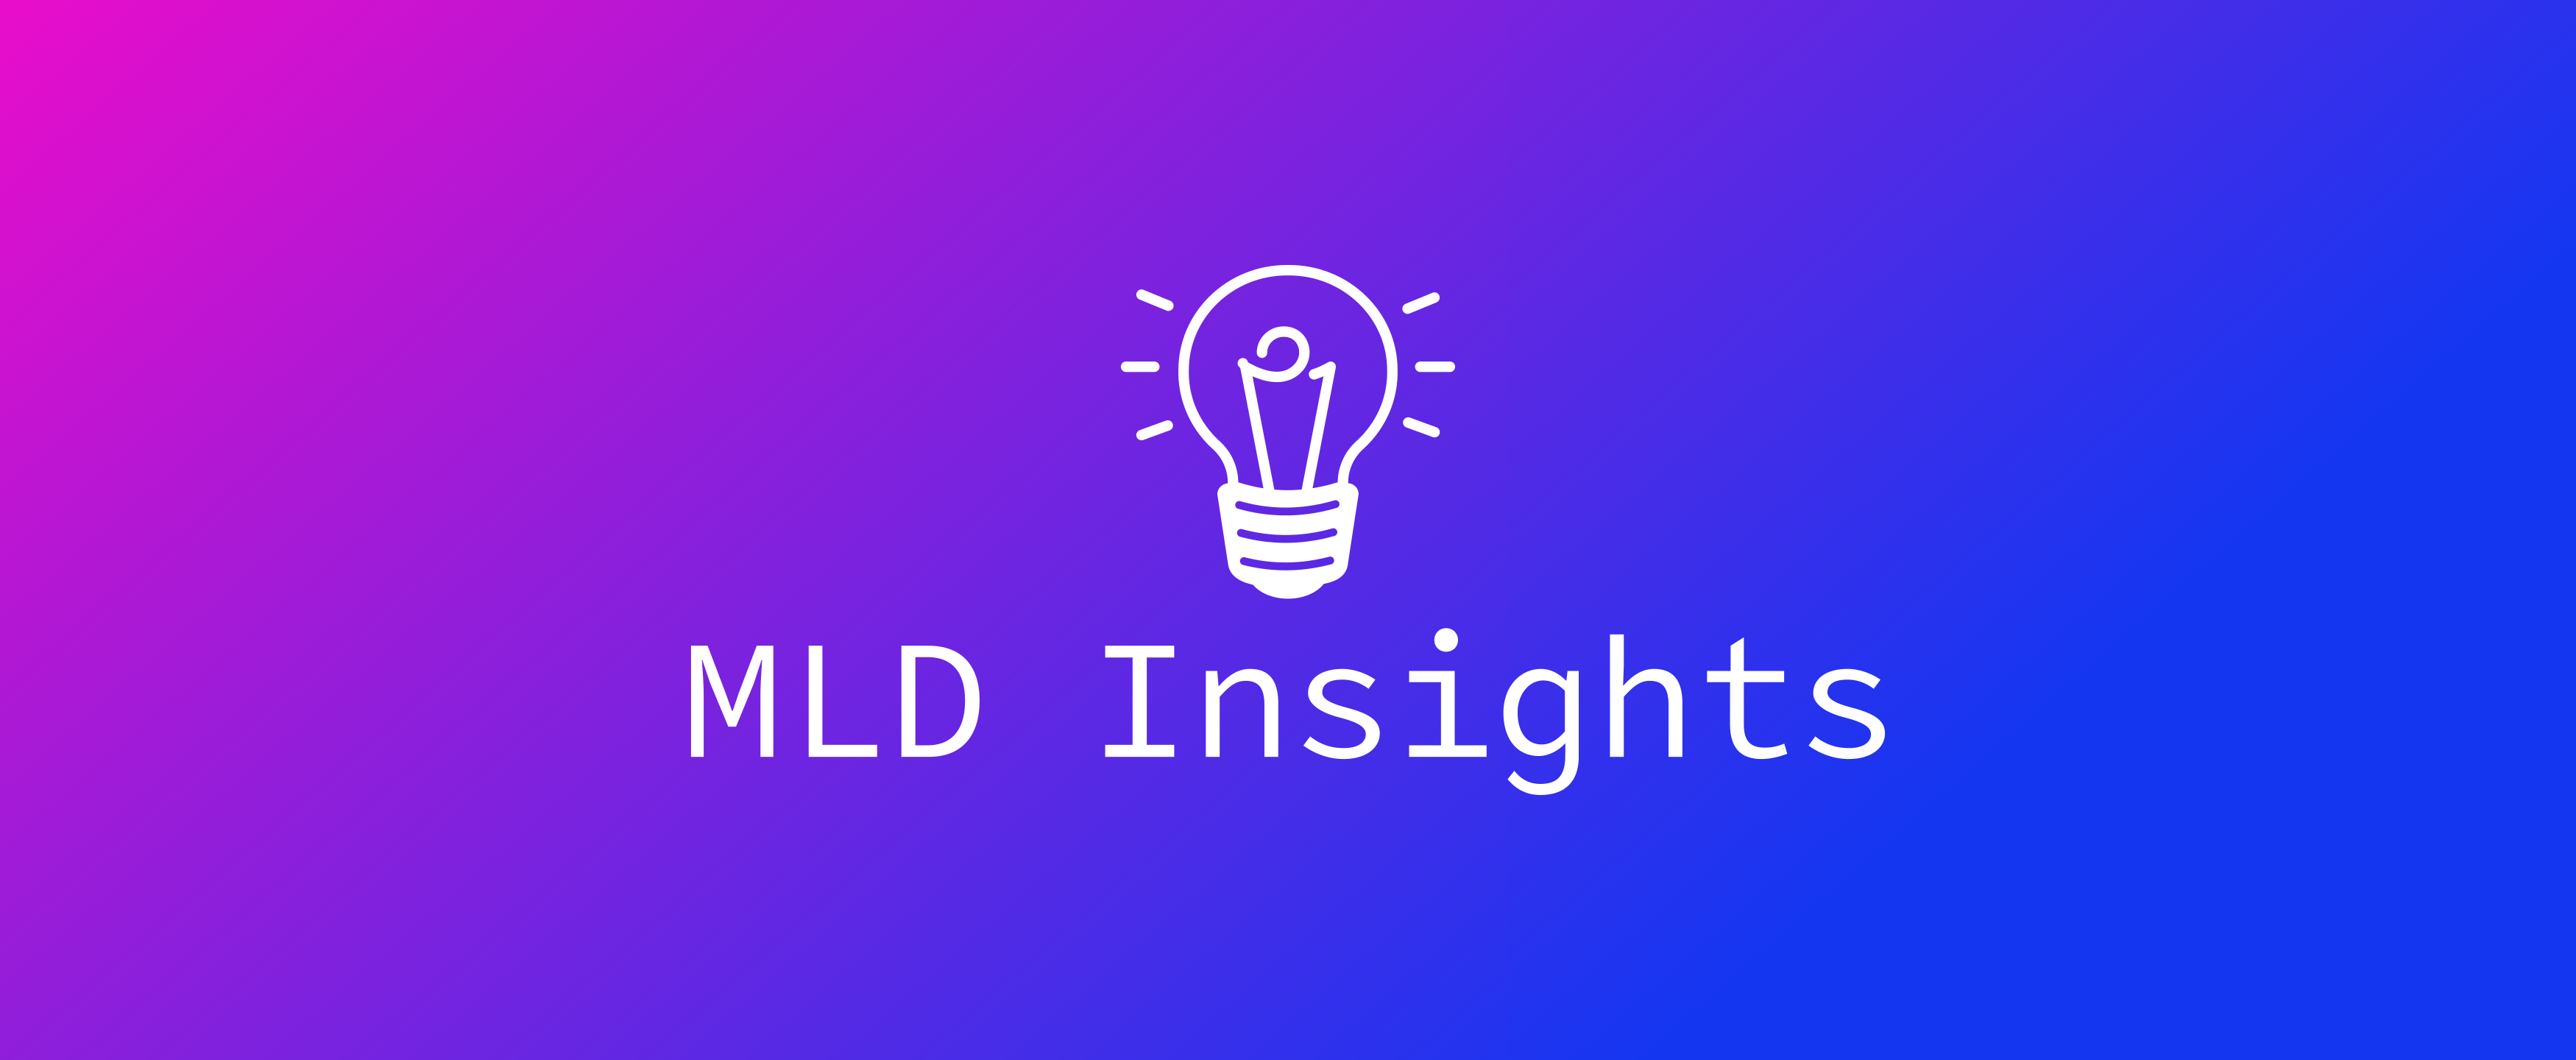 MLD Insights